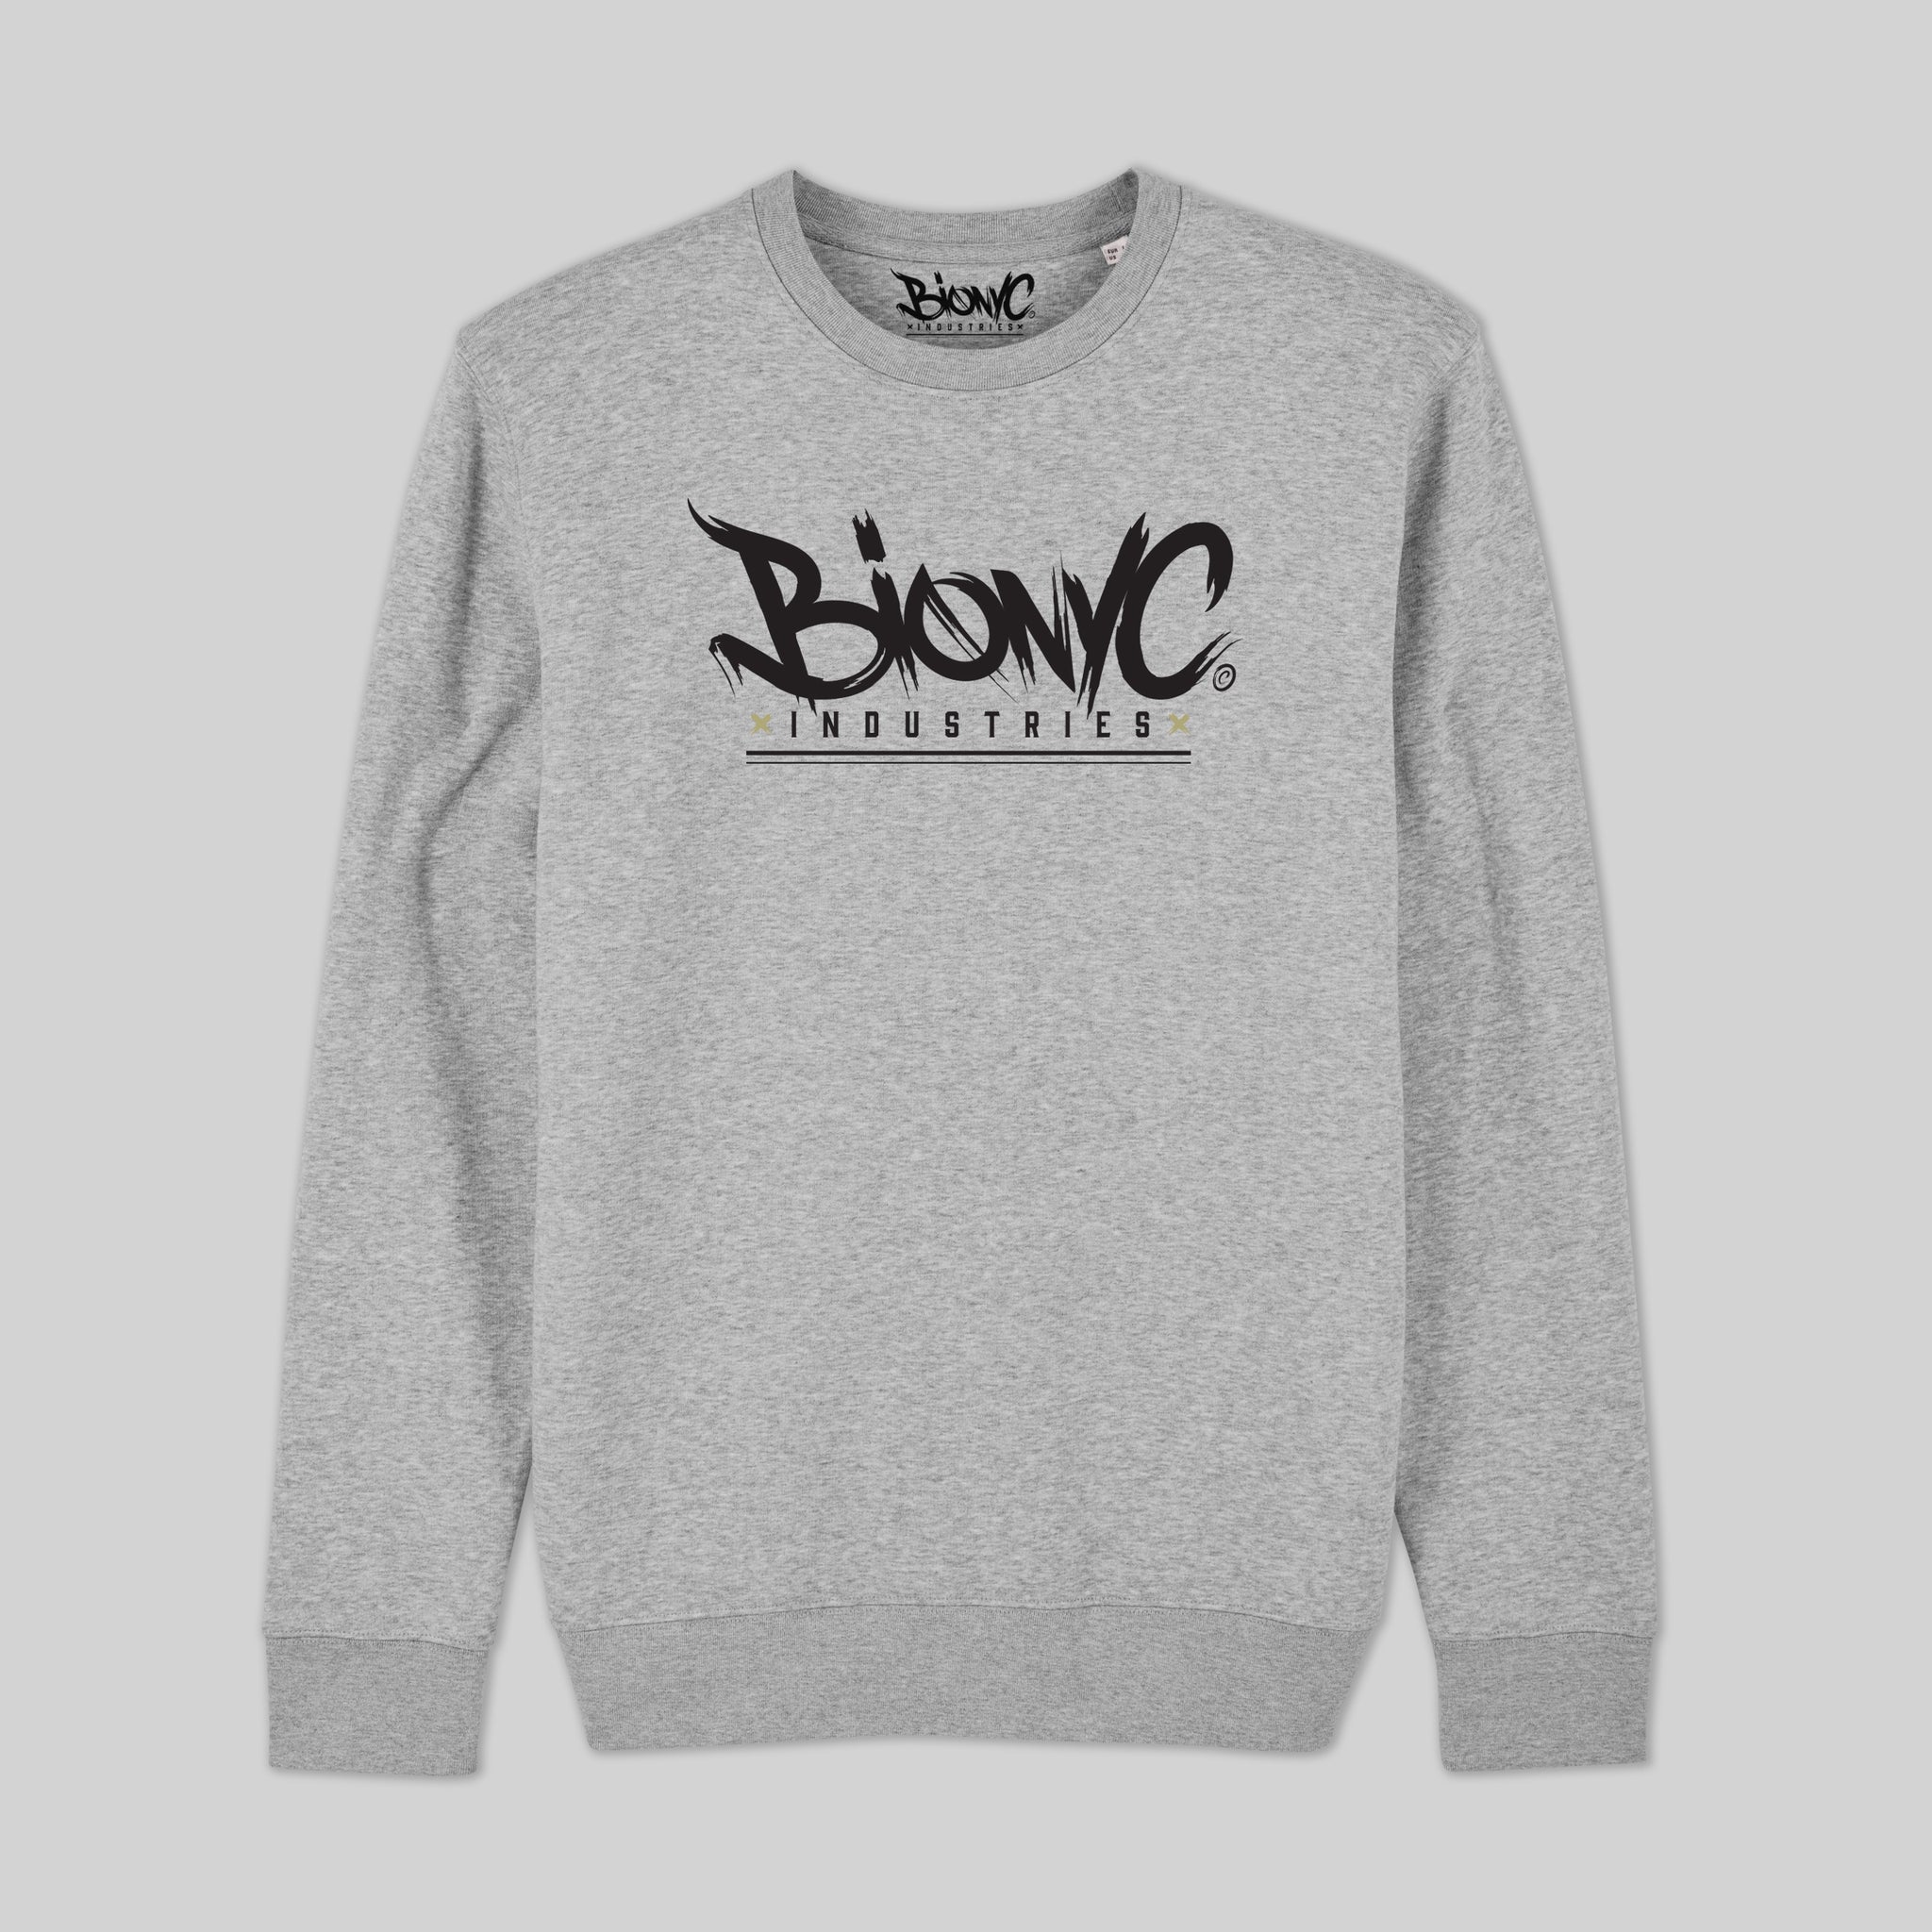 Bionyc Tag - Youth Sweatshirt